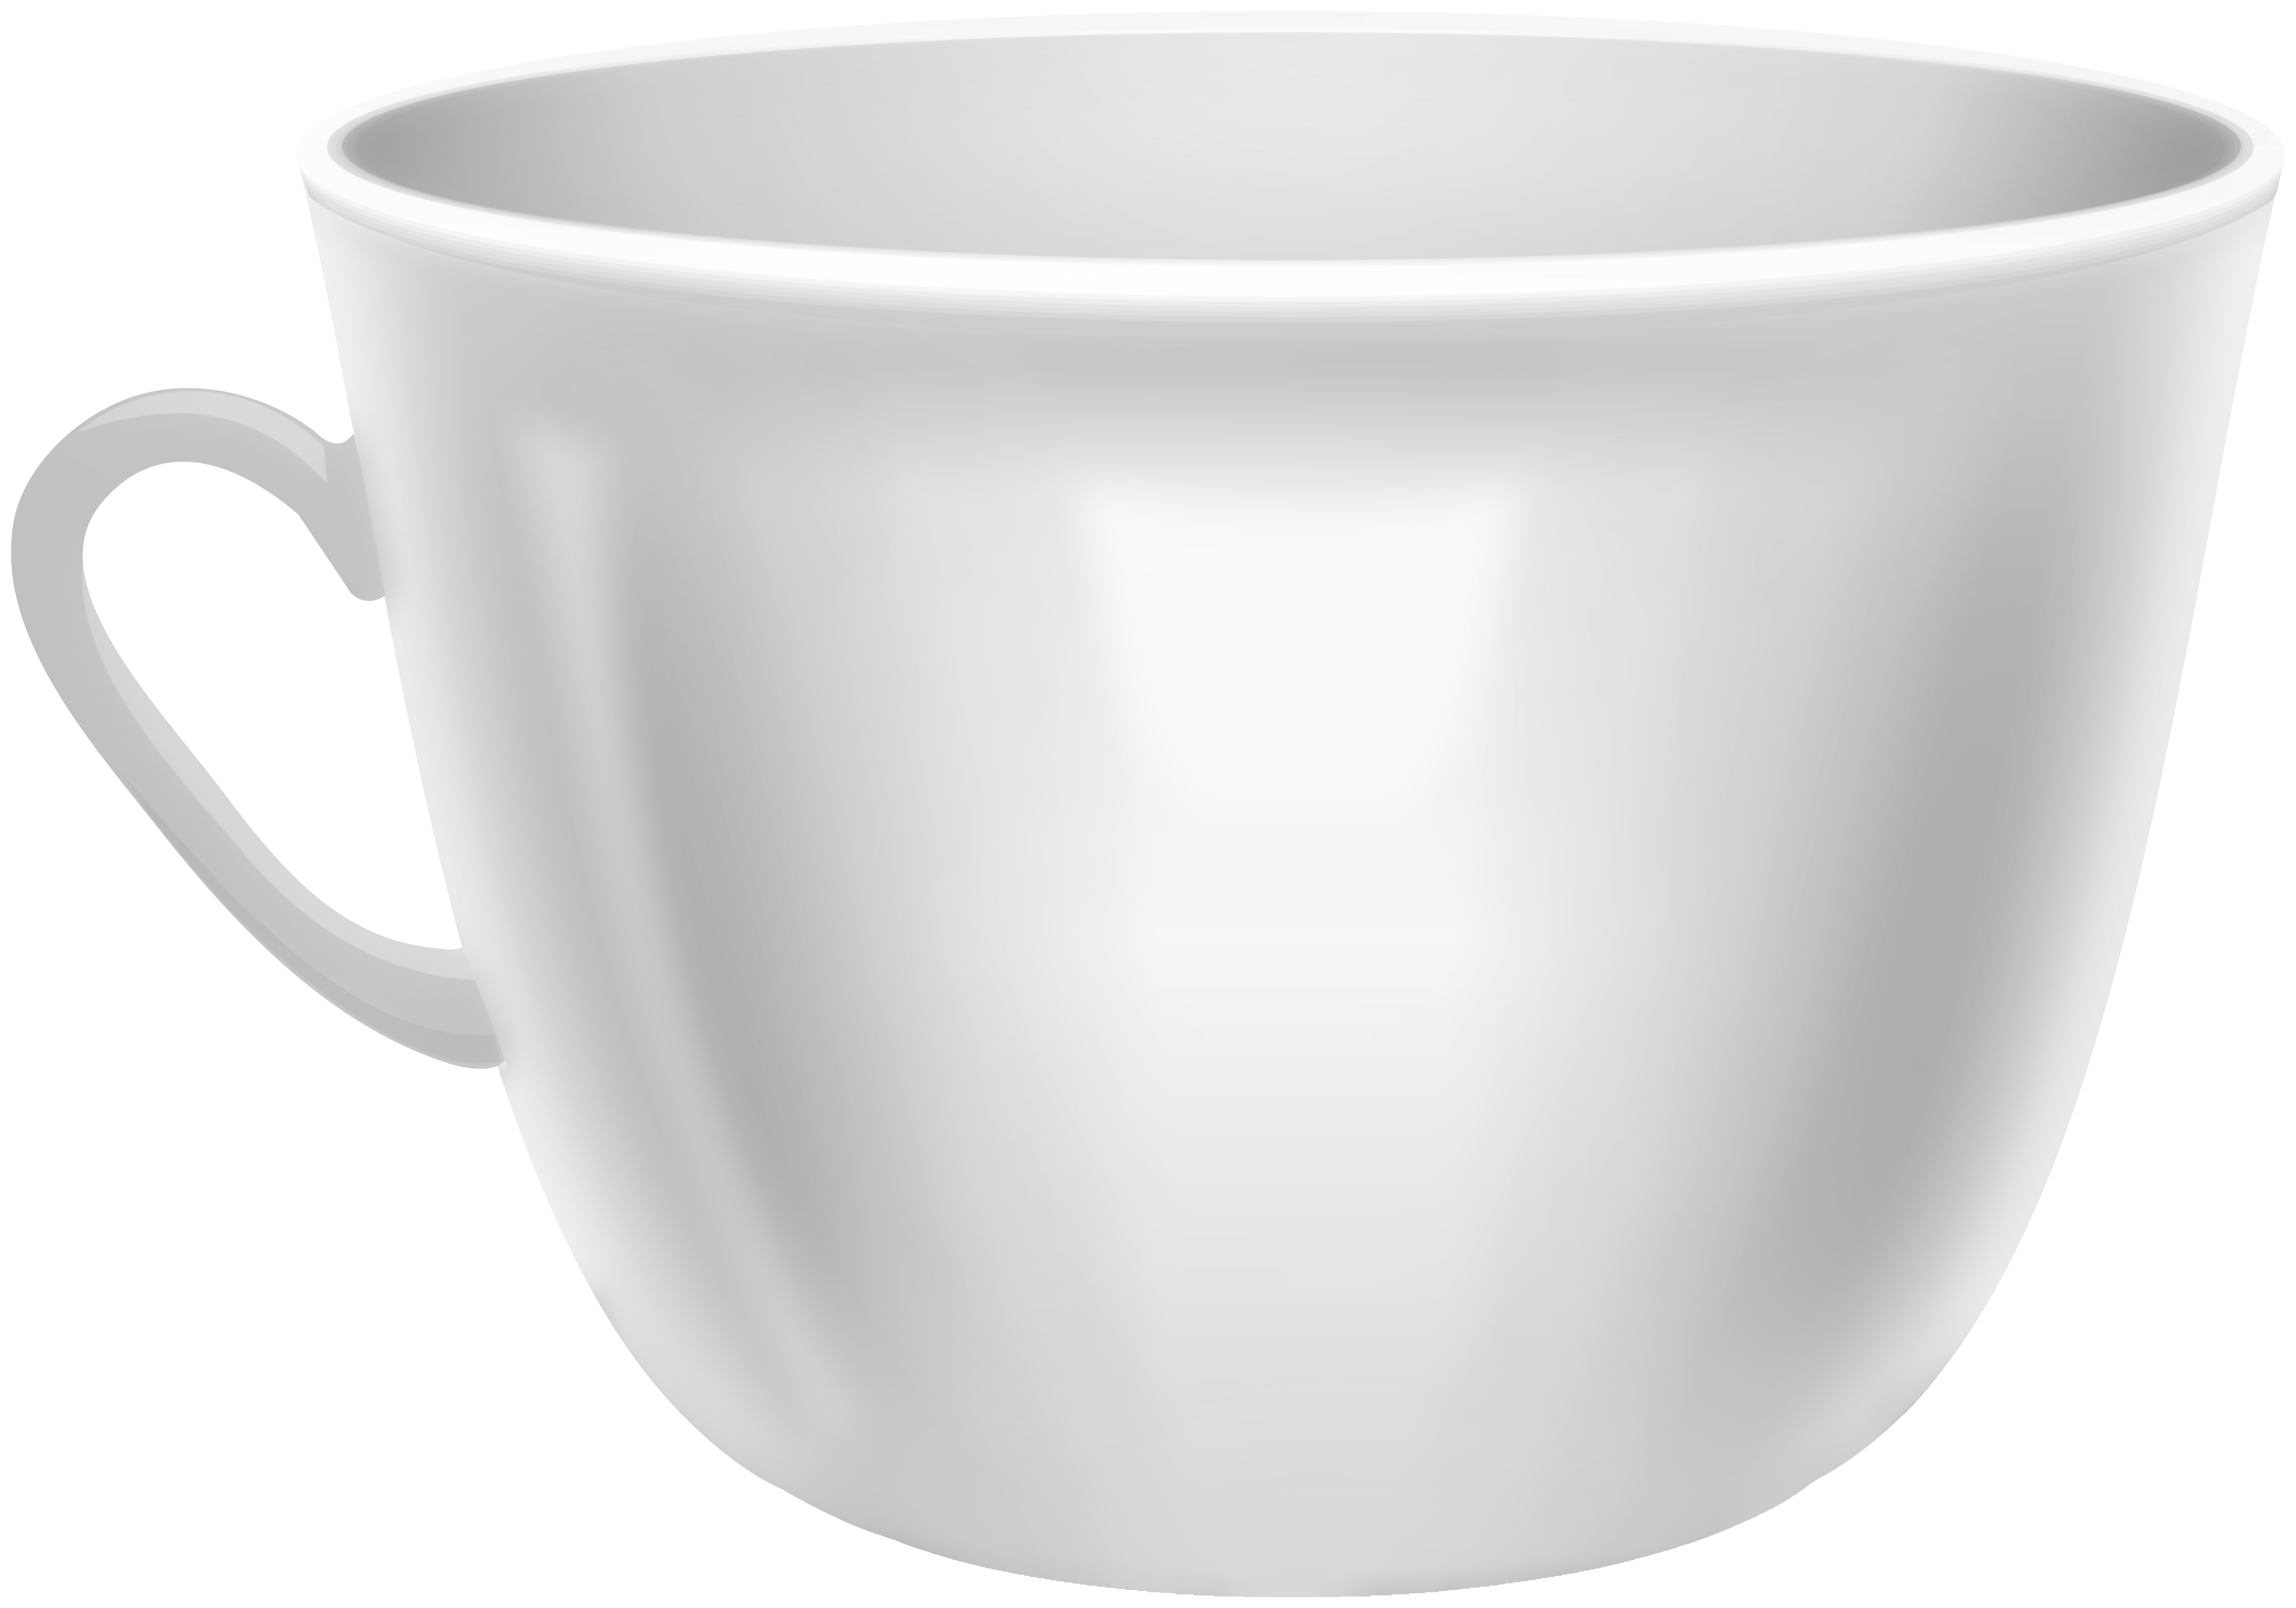 White coffee mug.